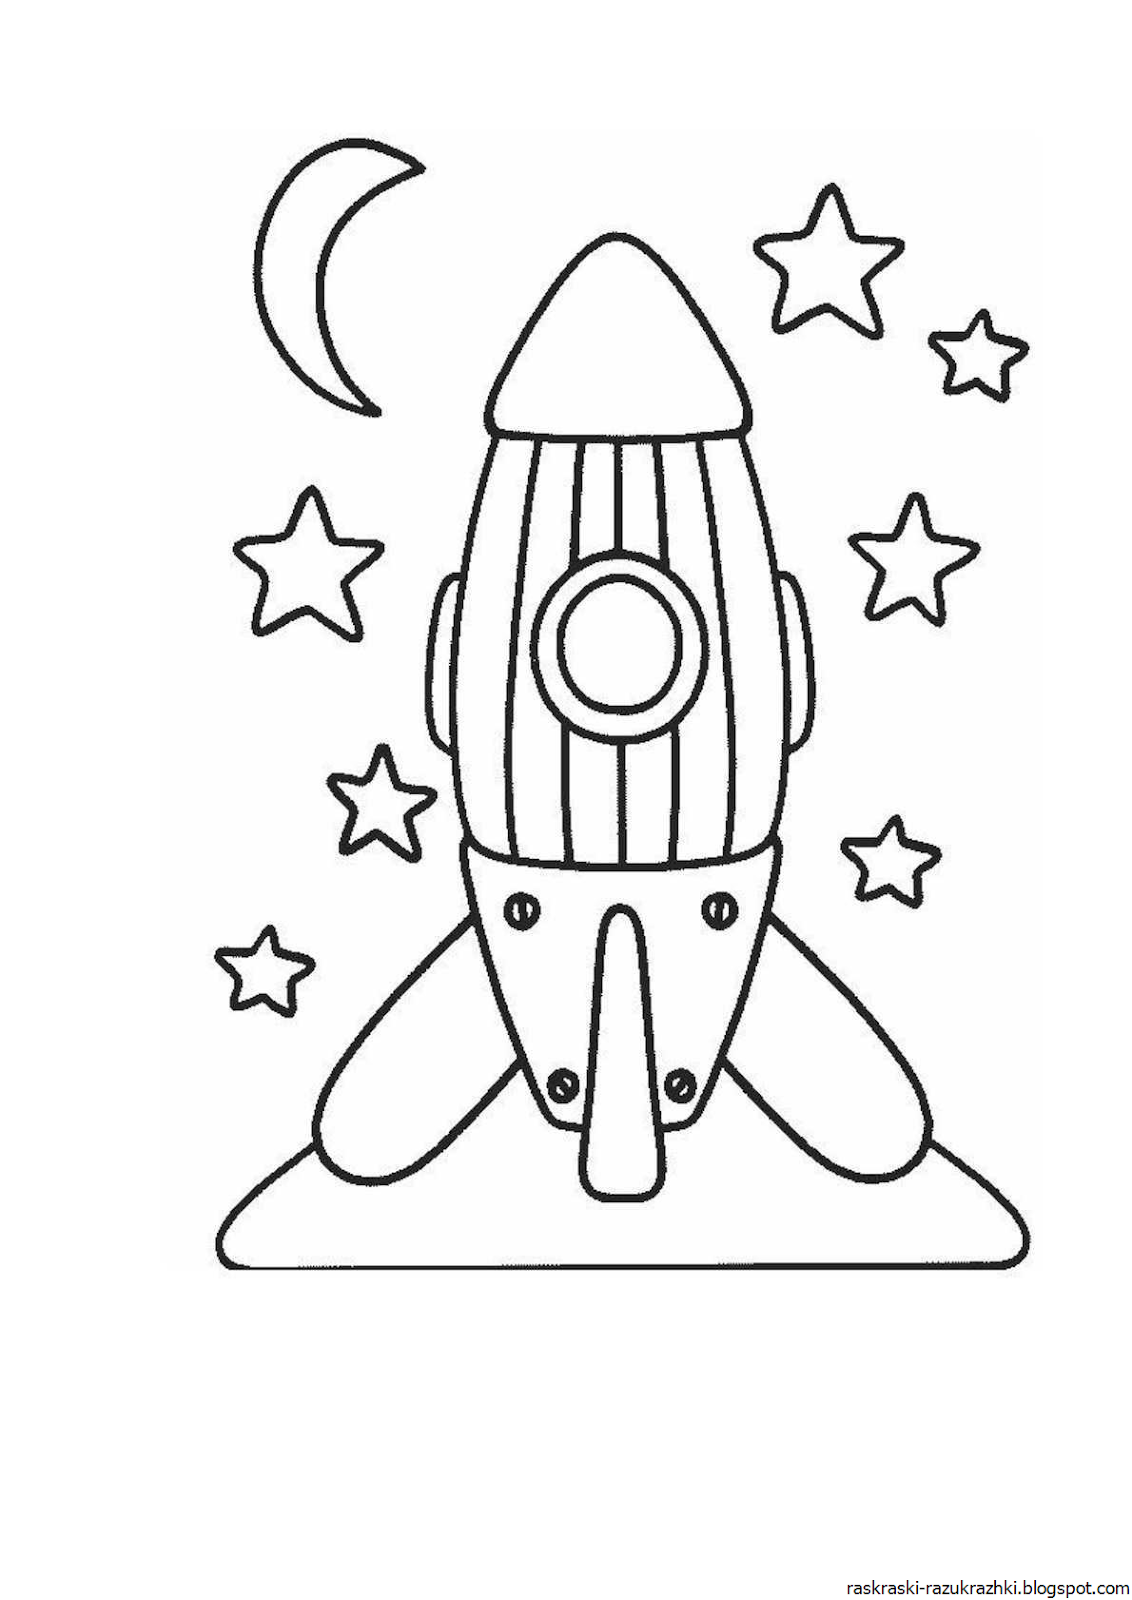 Ракета раскраска. Ракета раскраска для детей. Космическая ракета раскраска для детей. Раскраски на тему космос. Поделка ко дню космонавтики шаблоны распечатать